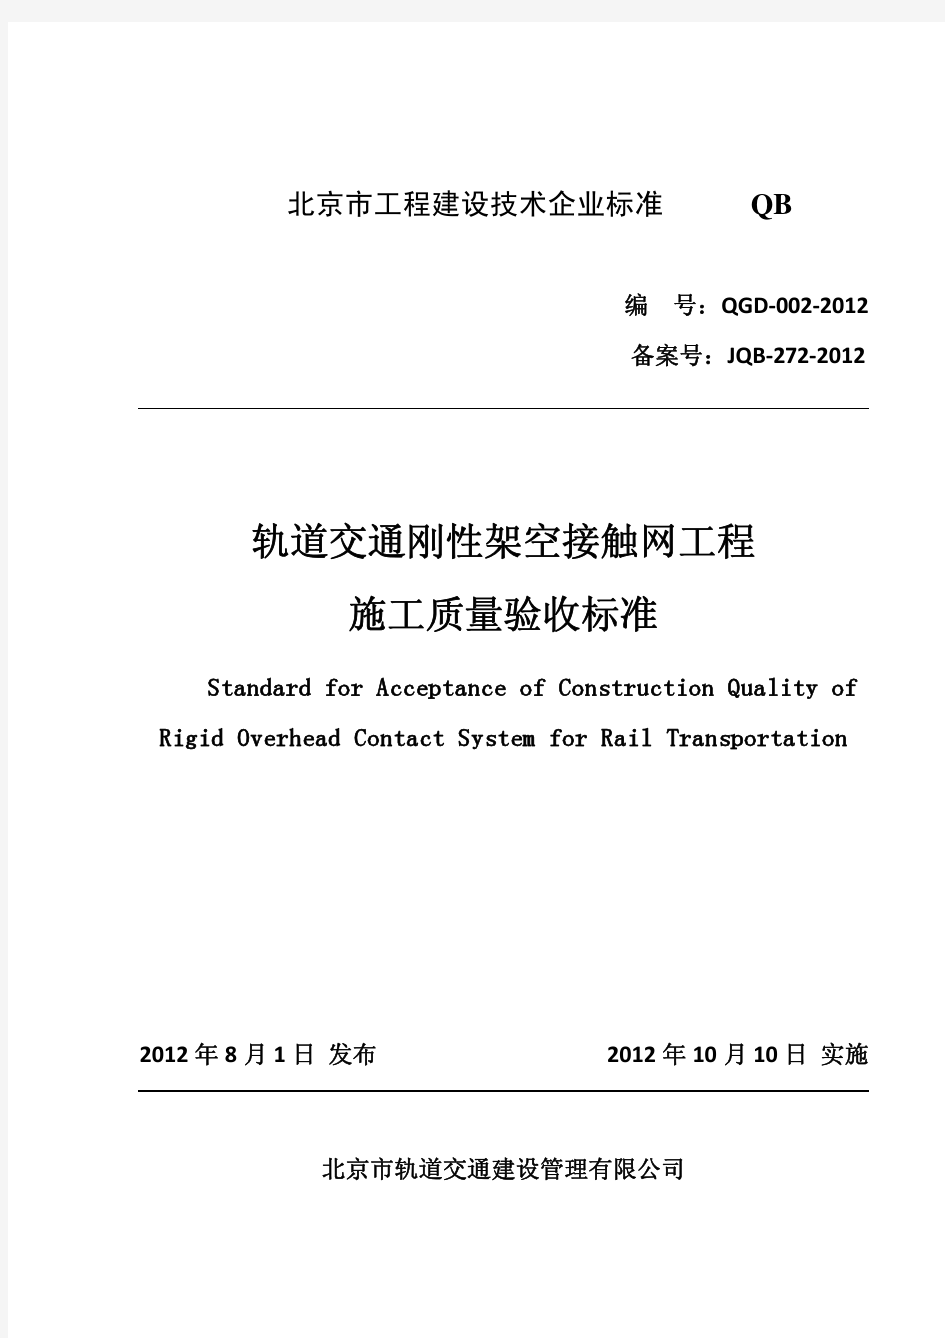 北京地铁刚性架空接触网标准